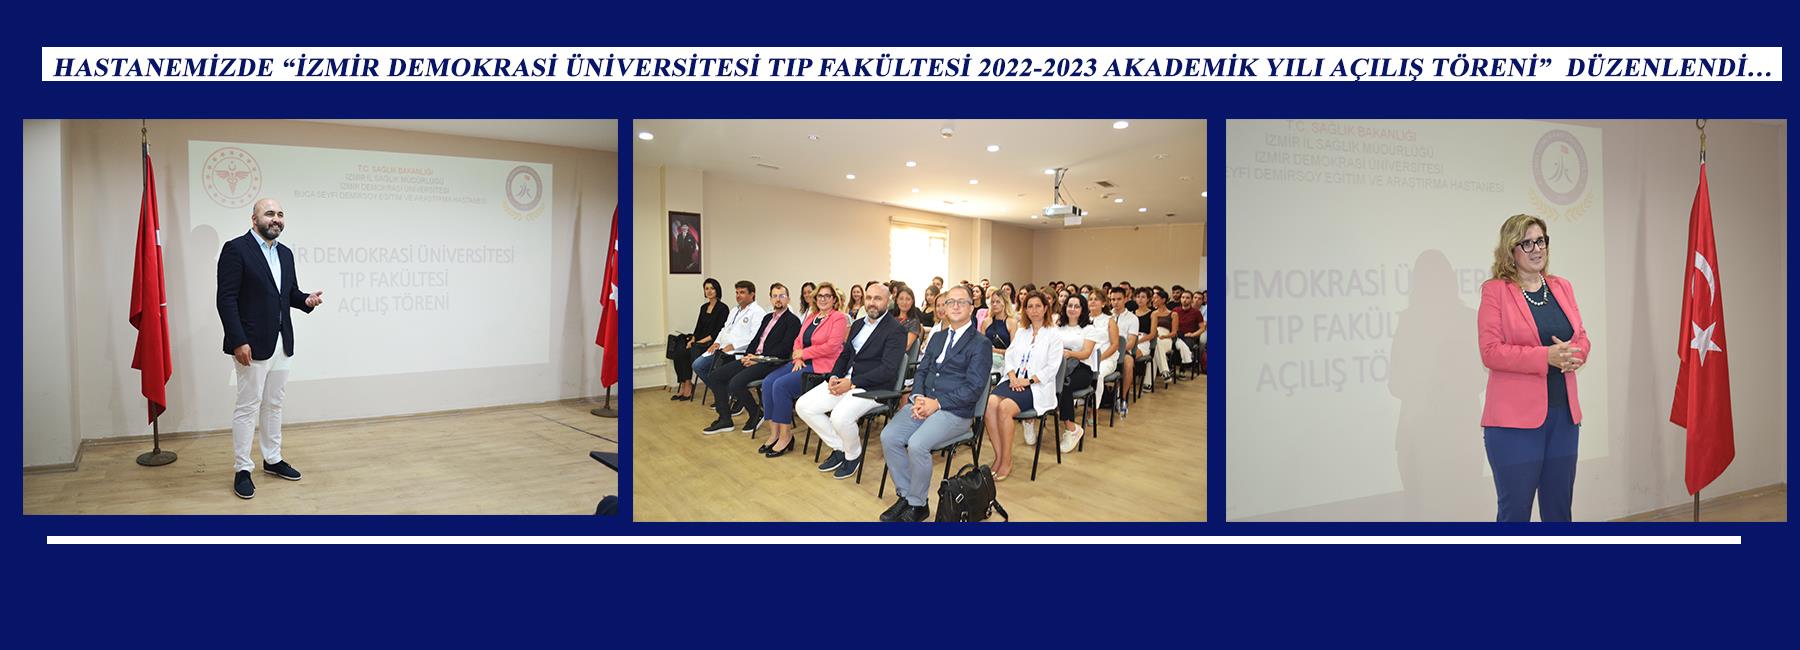 Hastanemizde “İzmir Demokrasi Üniversitesi Tıp Fakültesi 2022-2023 Akademik Yılı Açılış Töreni” Düzenlendi…